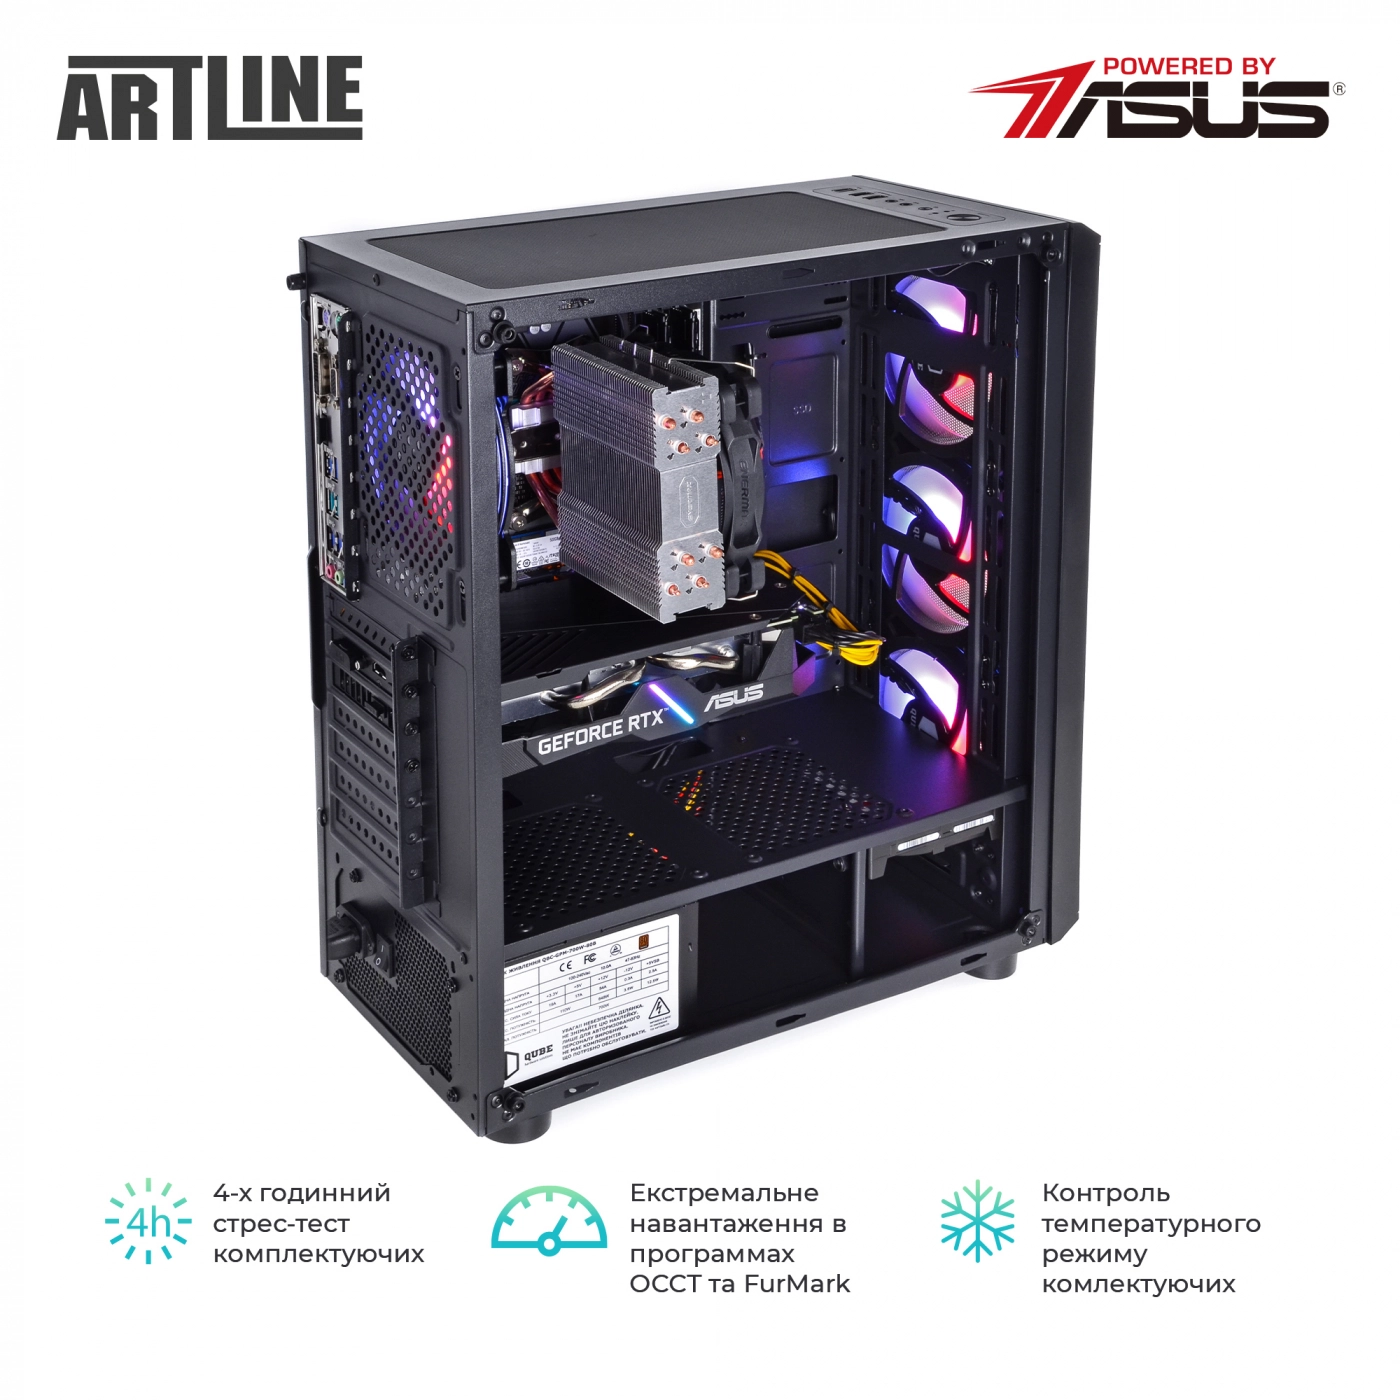 Купить Компьютер ARTLINE Gaming X73v28 - фото 9